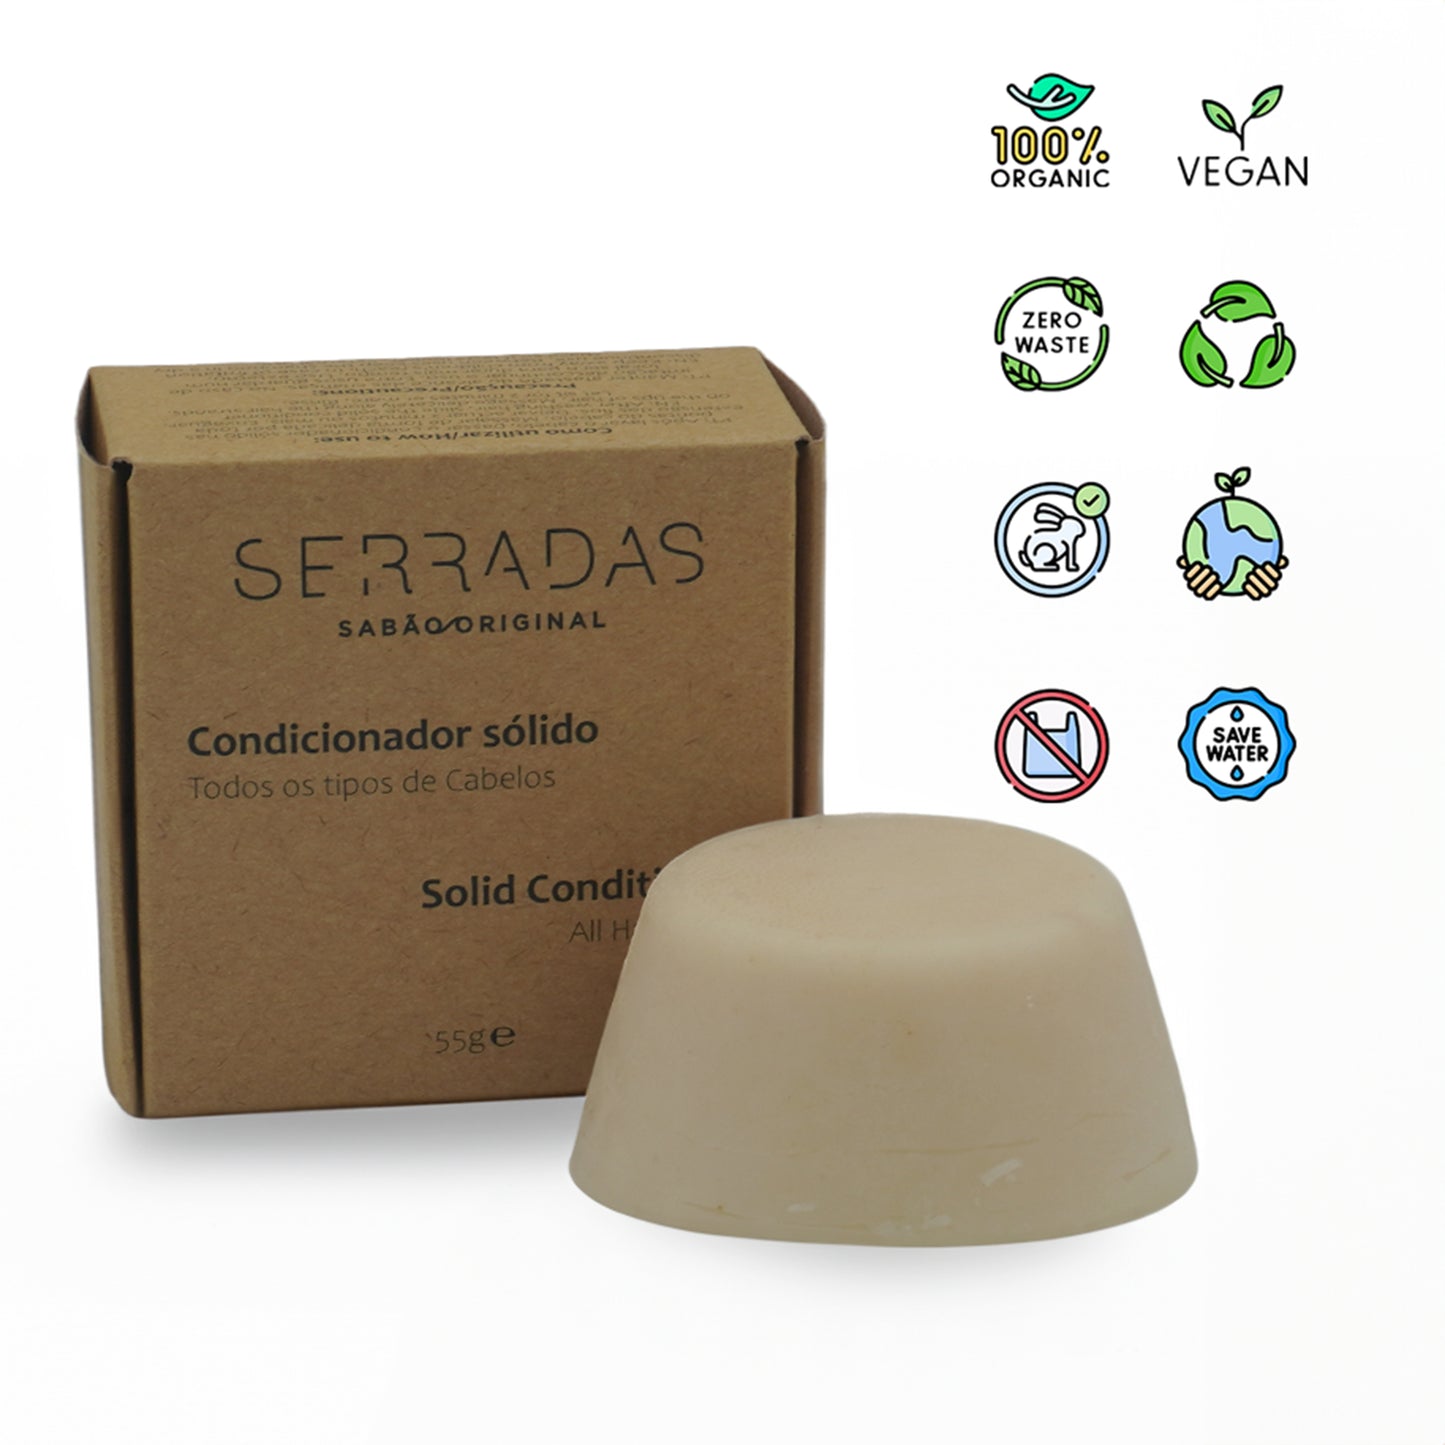 Condicionador Sólido Serradas - Artesanal e Natural zero waste organic vegan